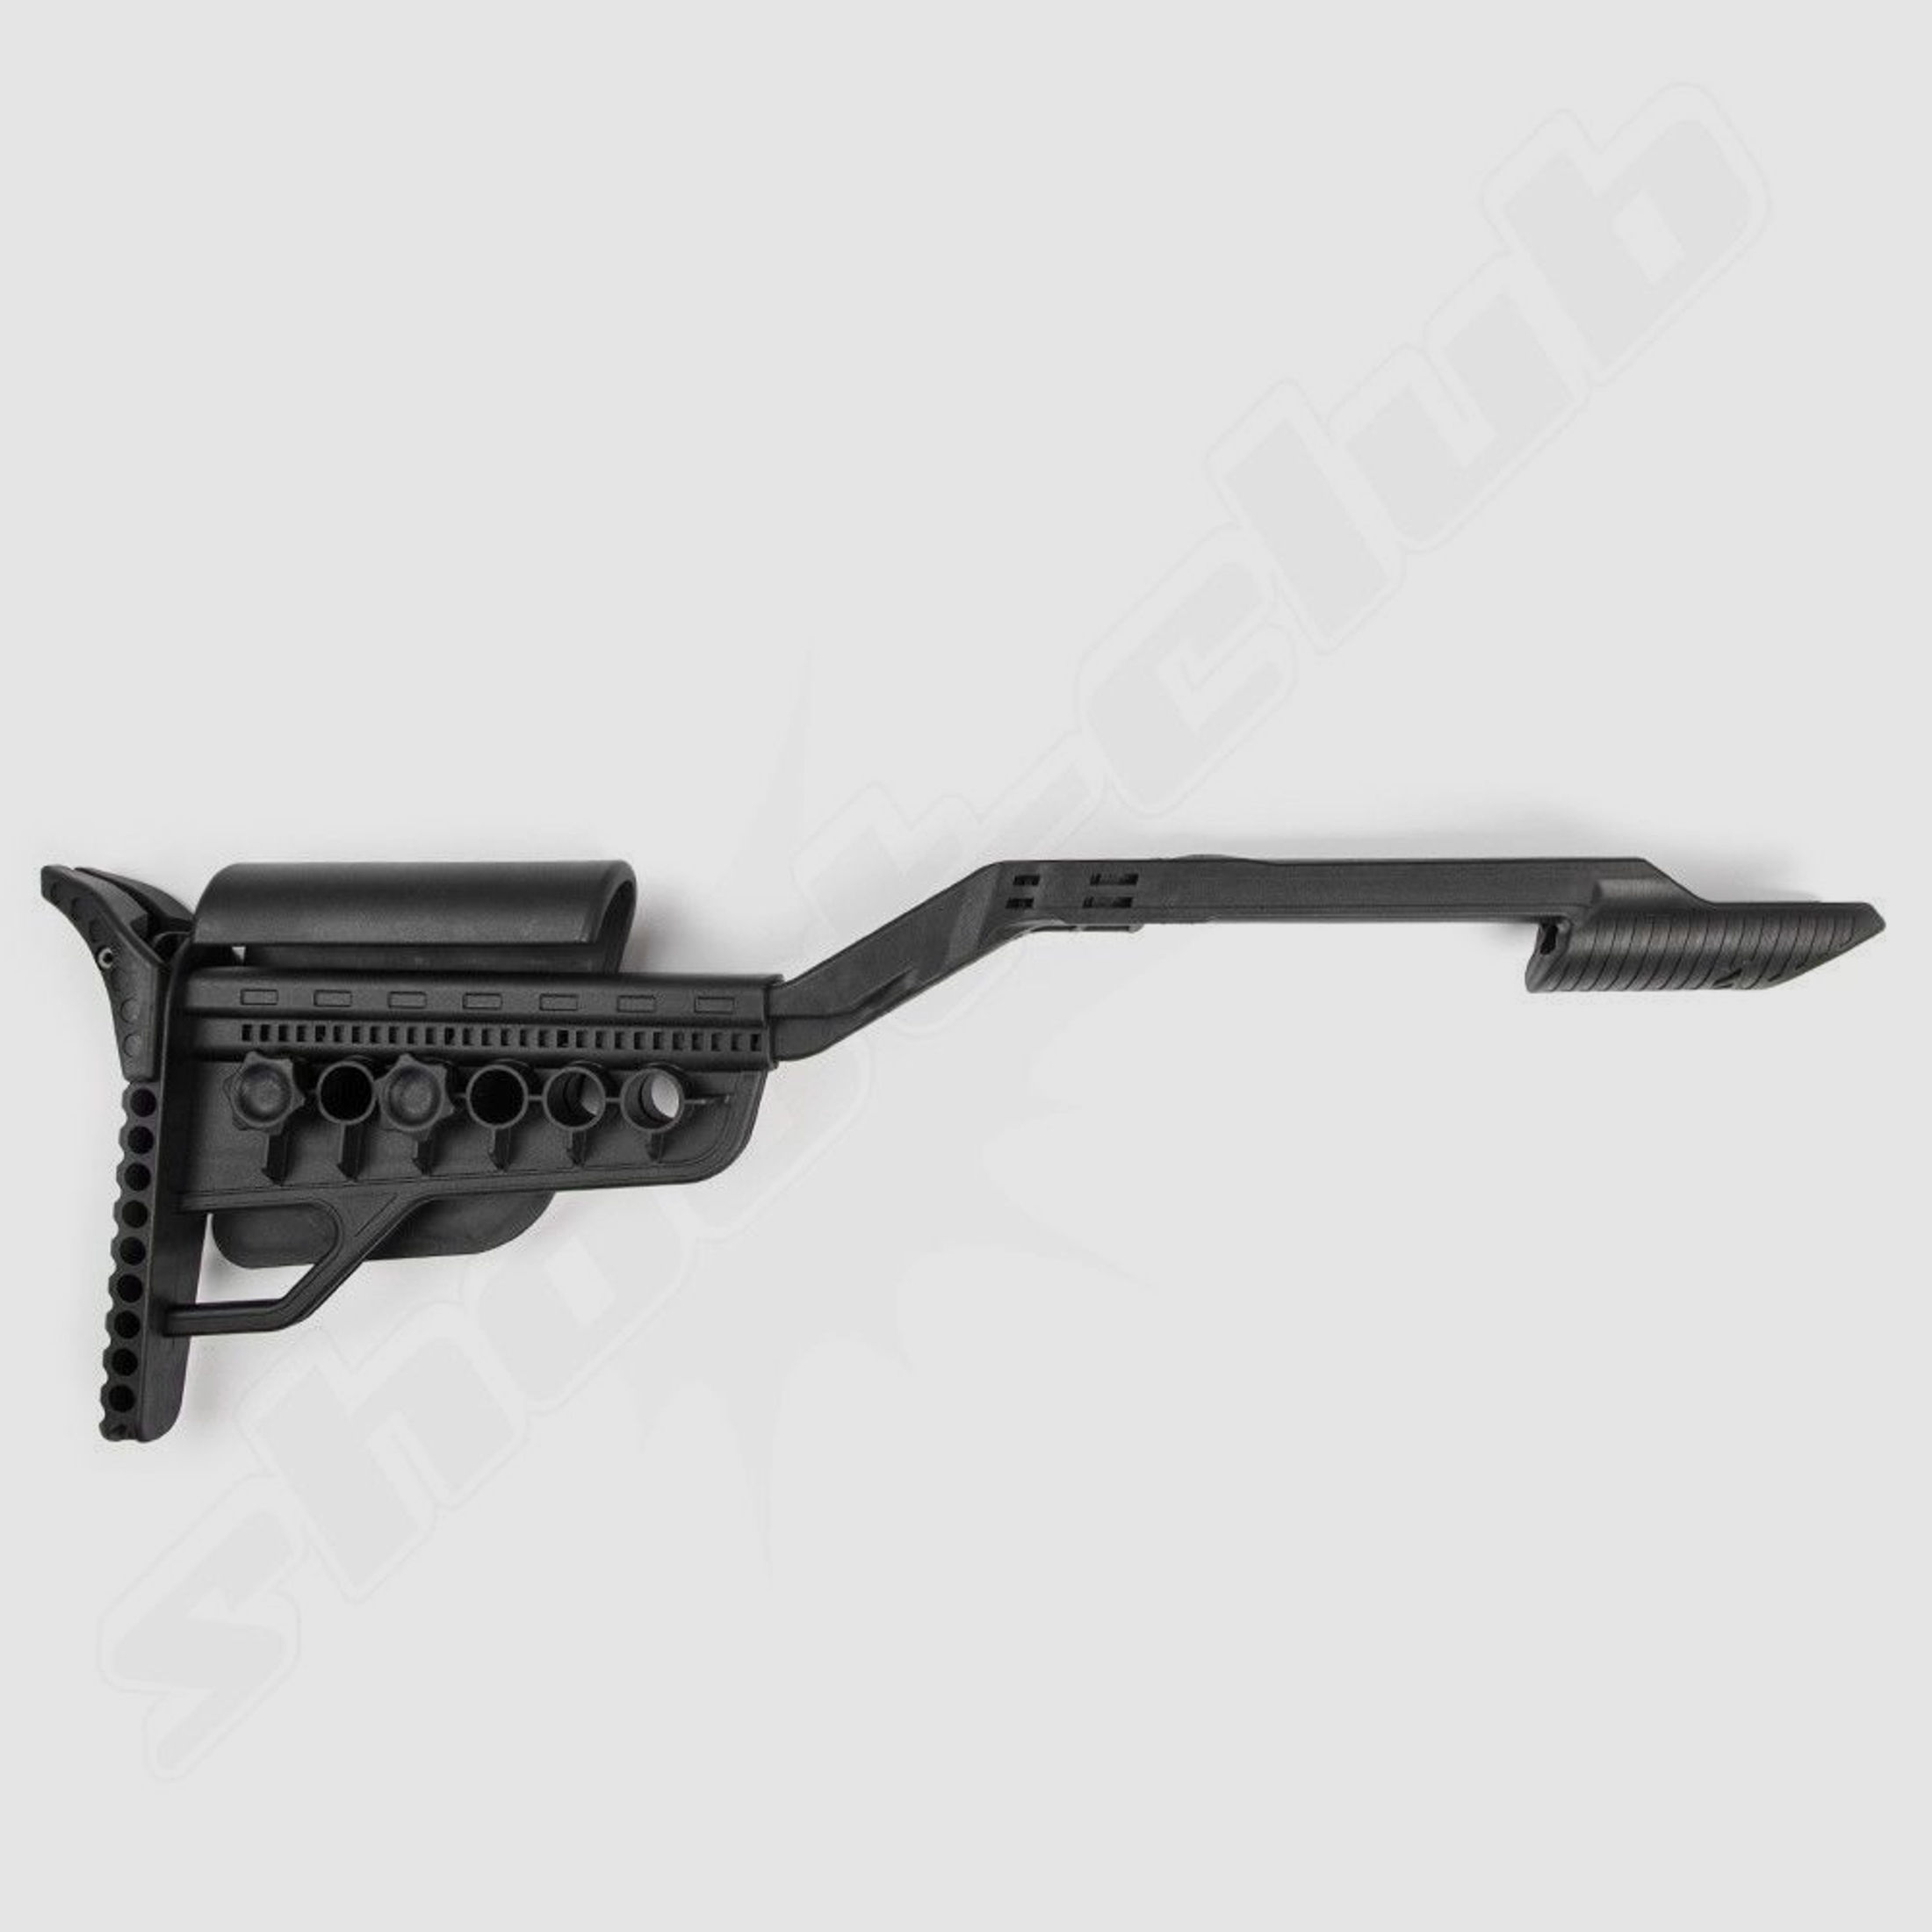 Anbauschaft für Luftpistole Zoraki HP01 Kal. 4,5mm